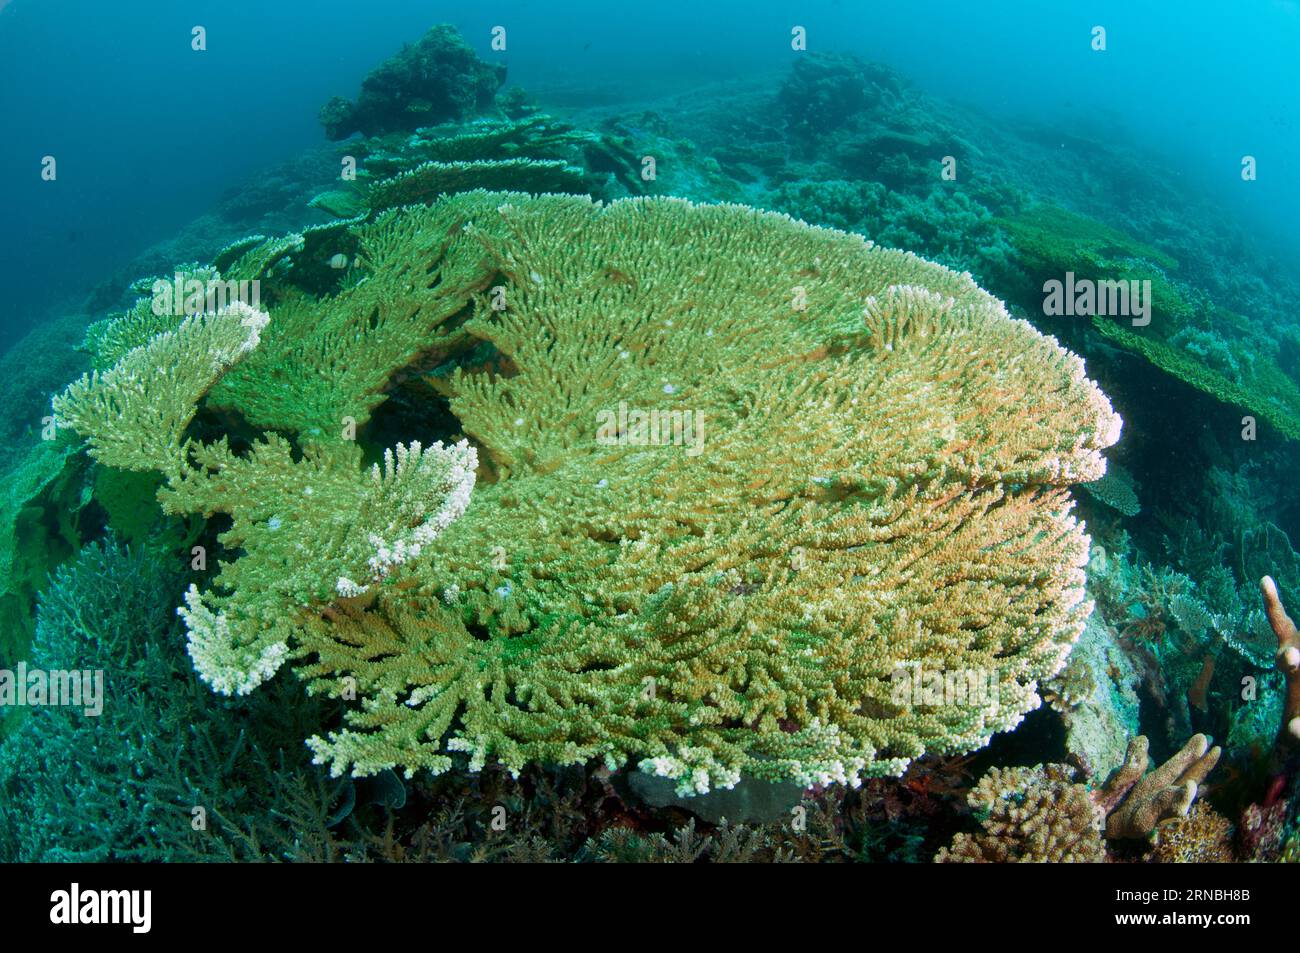 Table Coral, Acropora sp, grandi lastre che crescono su flusso lavico relativamente recente, Lava flow dive site, banda Neira, Ba.nda Islands, Maluku Province, Band Foto Stock